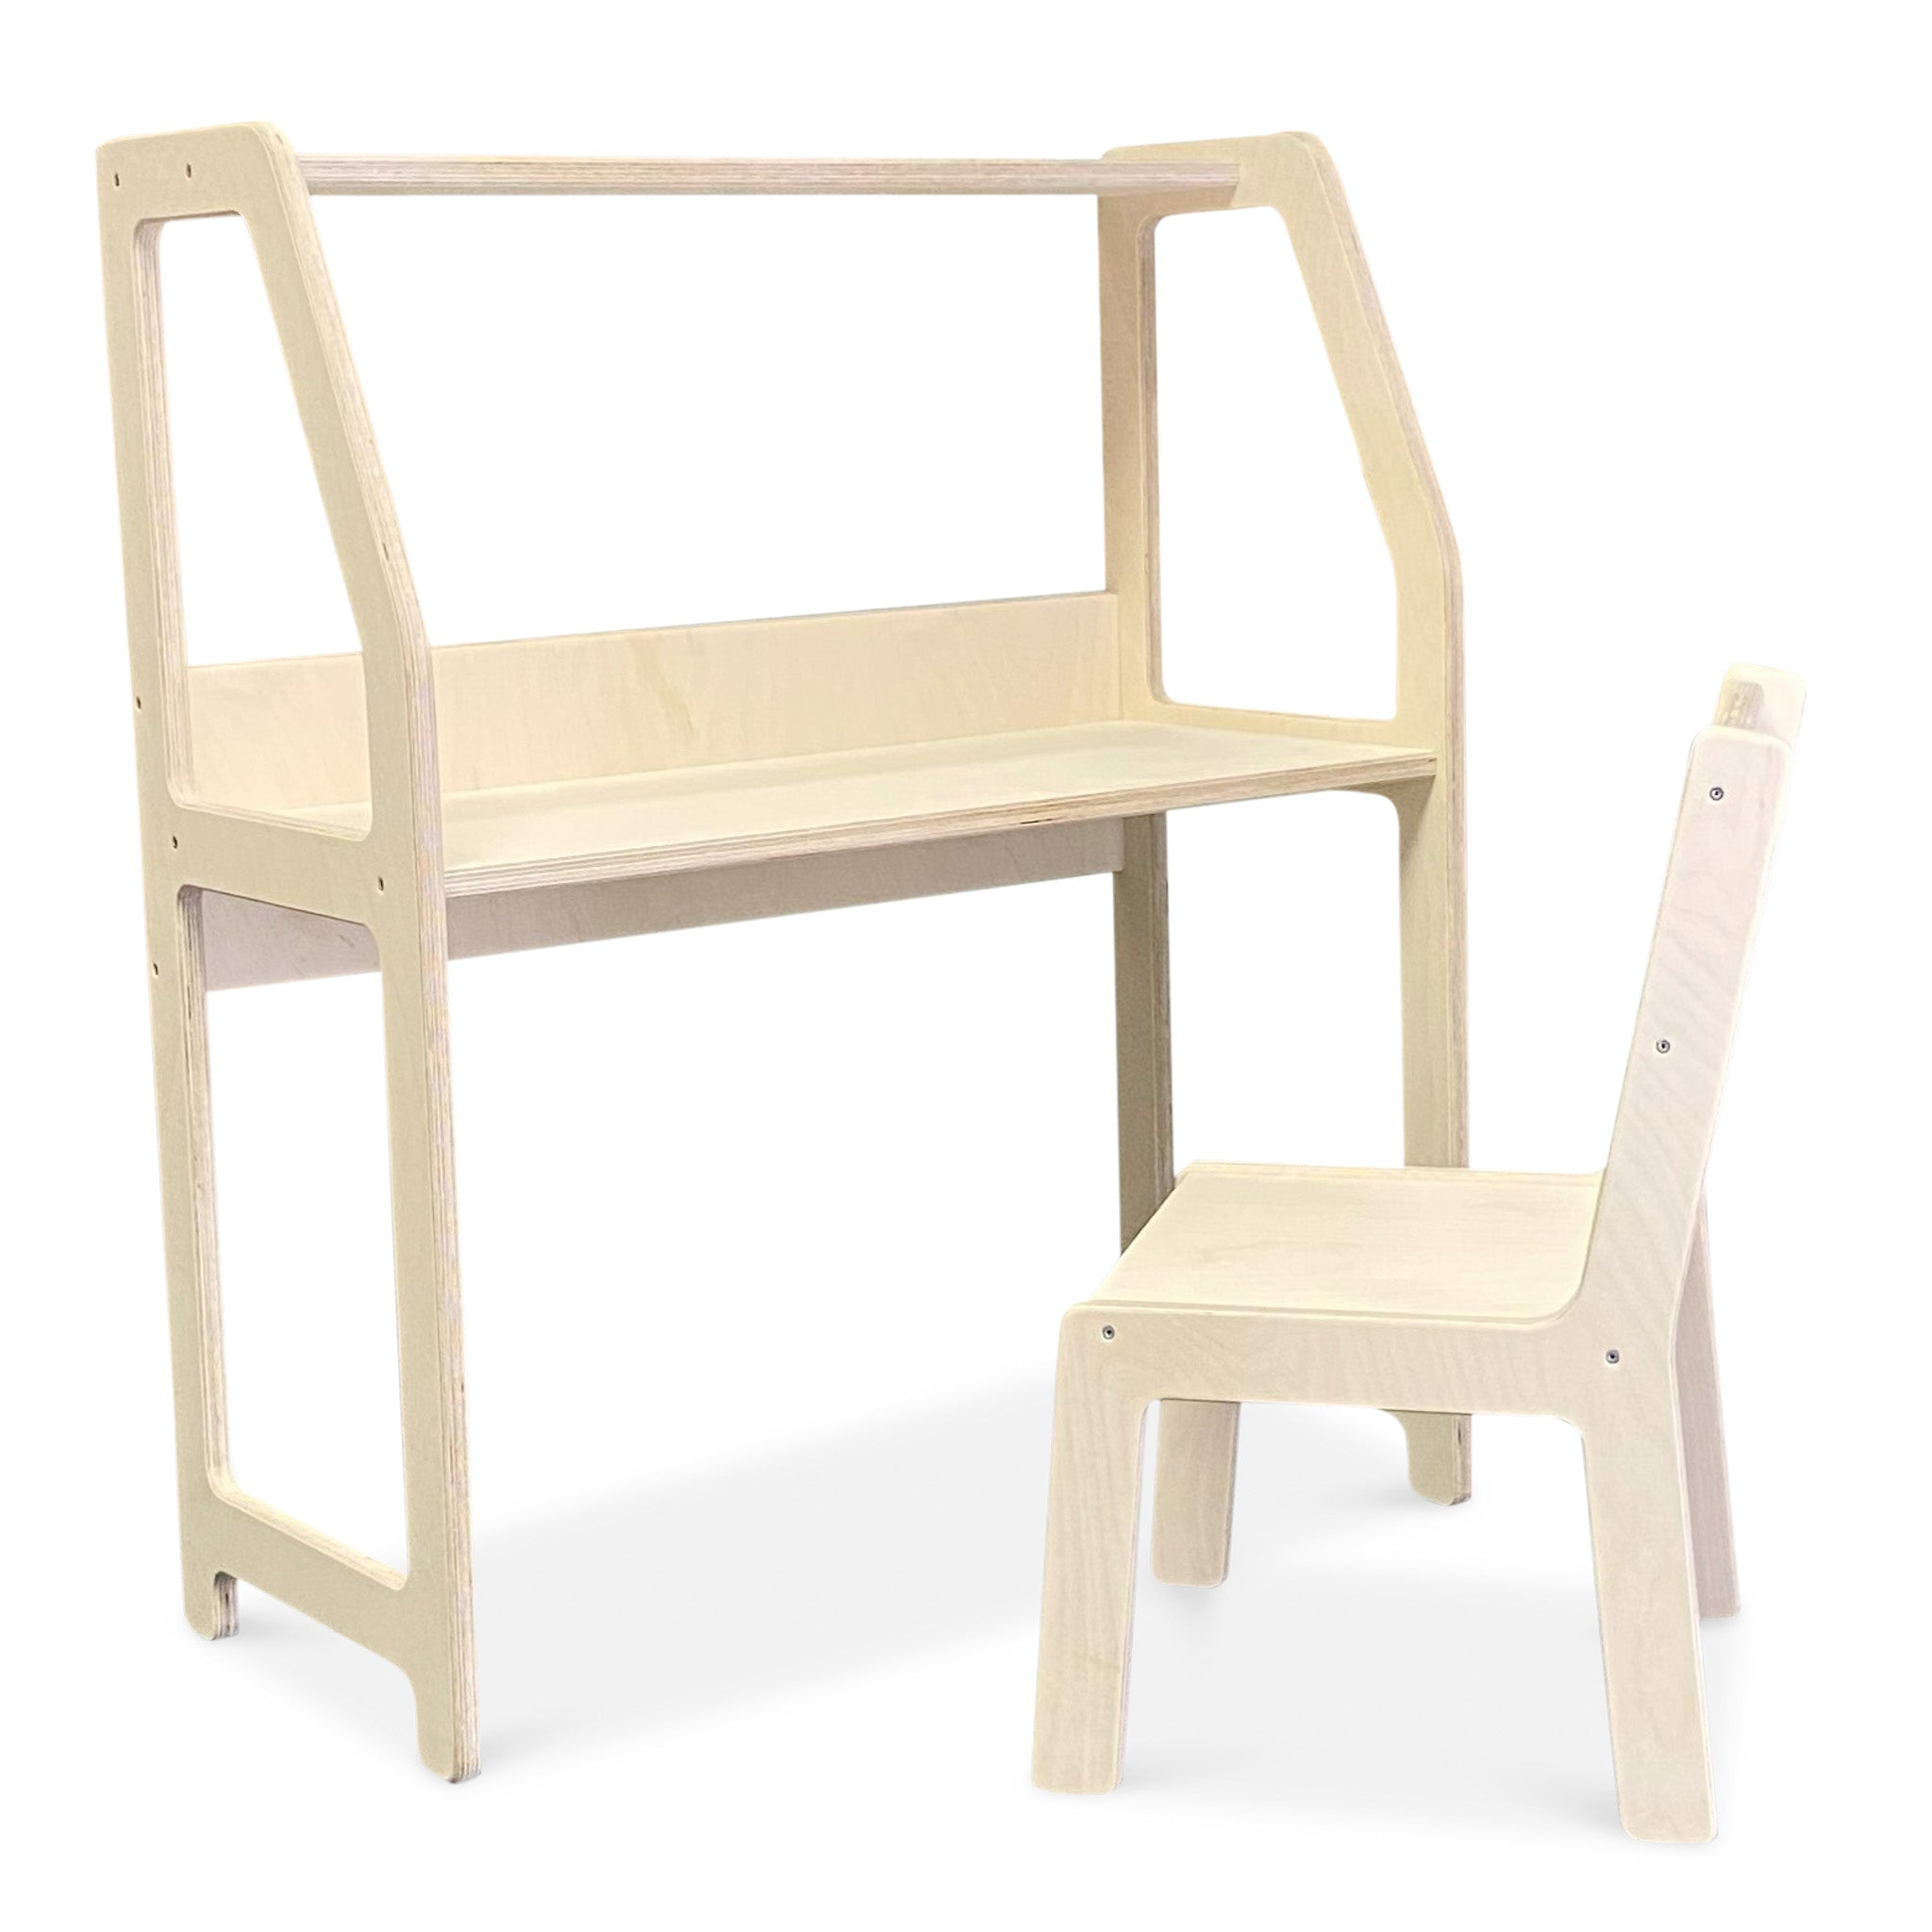 Bureau Montessori chambre d'enfant 2-7 ans | Avec chaise - naturel - toddie.fr